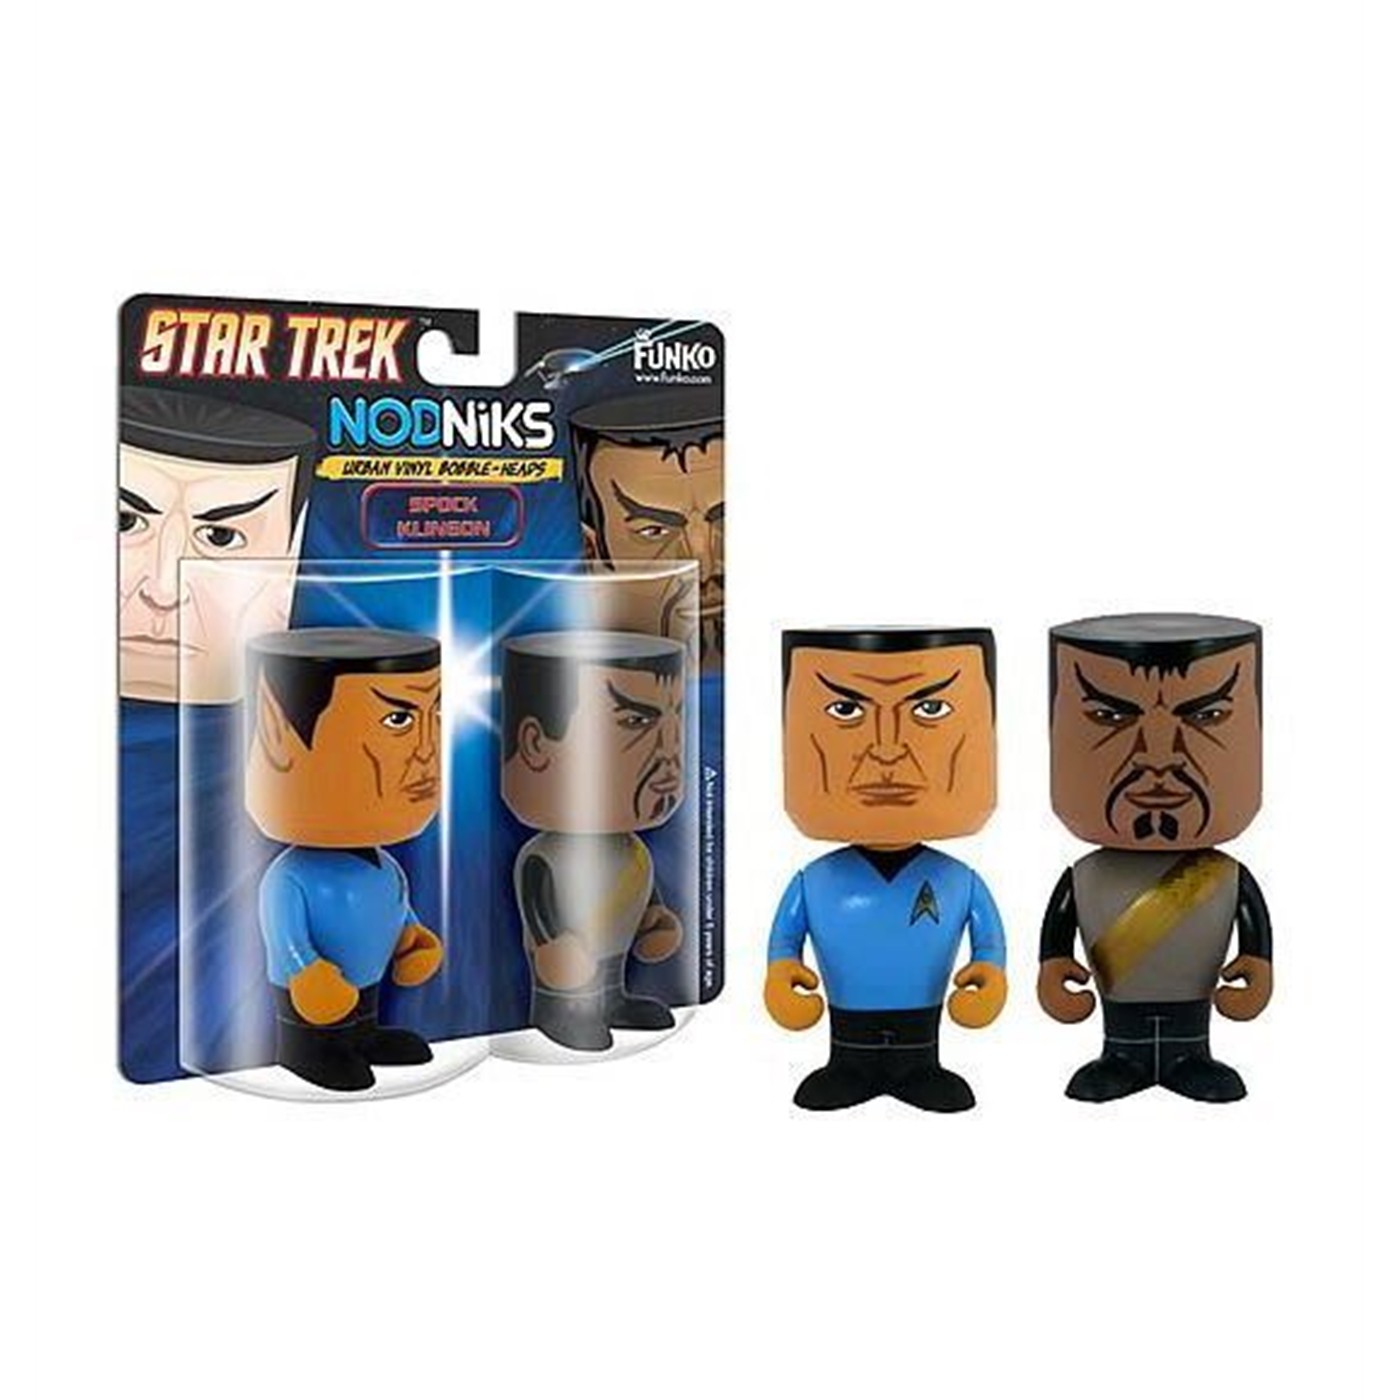 Nodniks Star Trek Spock and Klingon Vinyl Bobble Heads